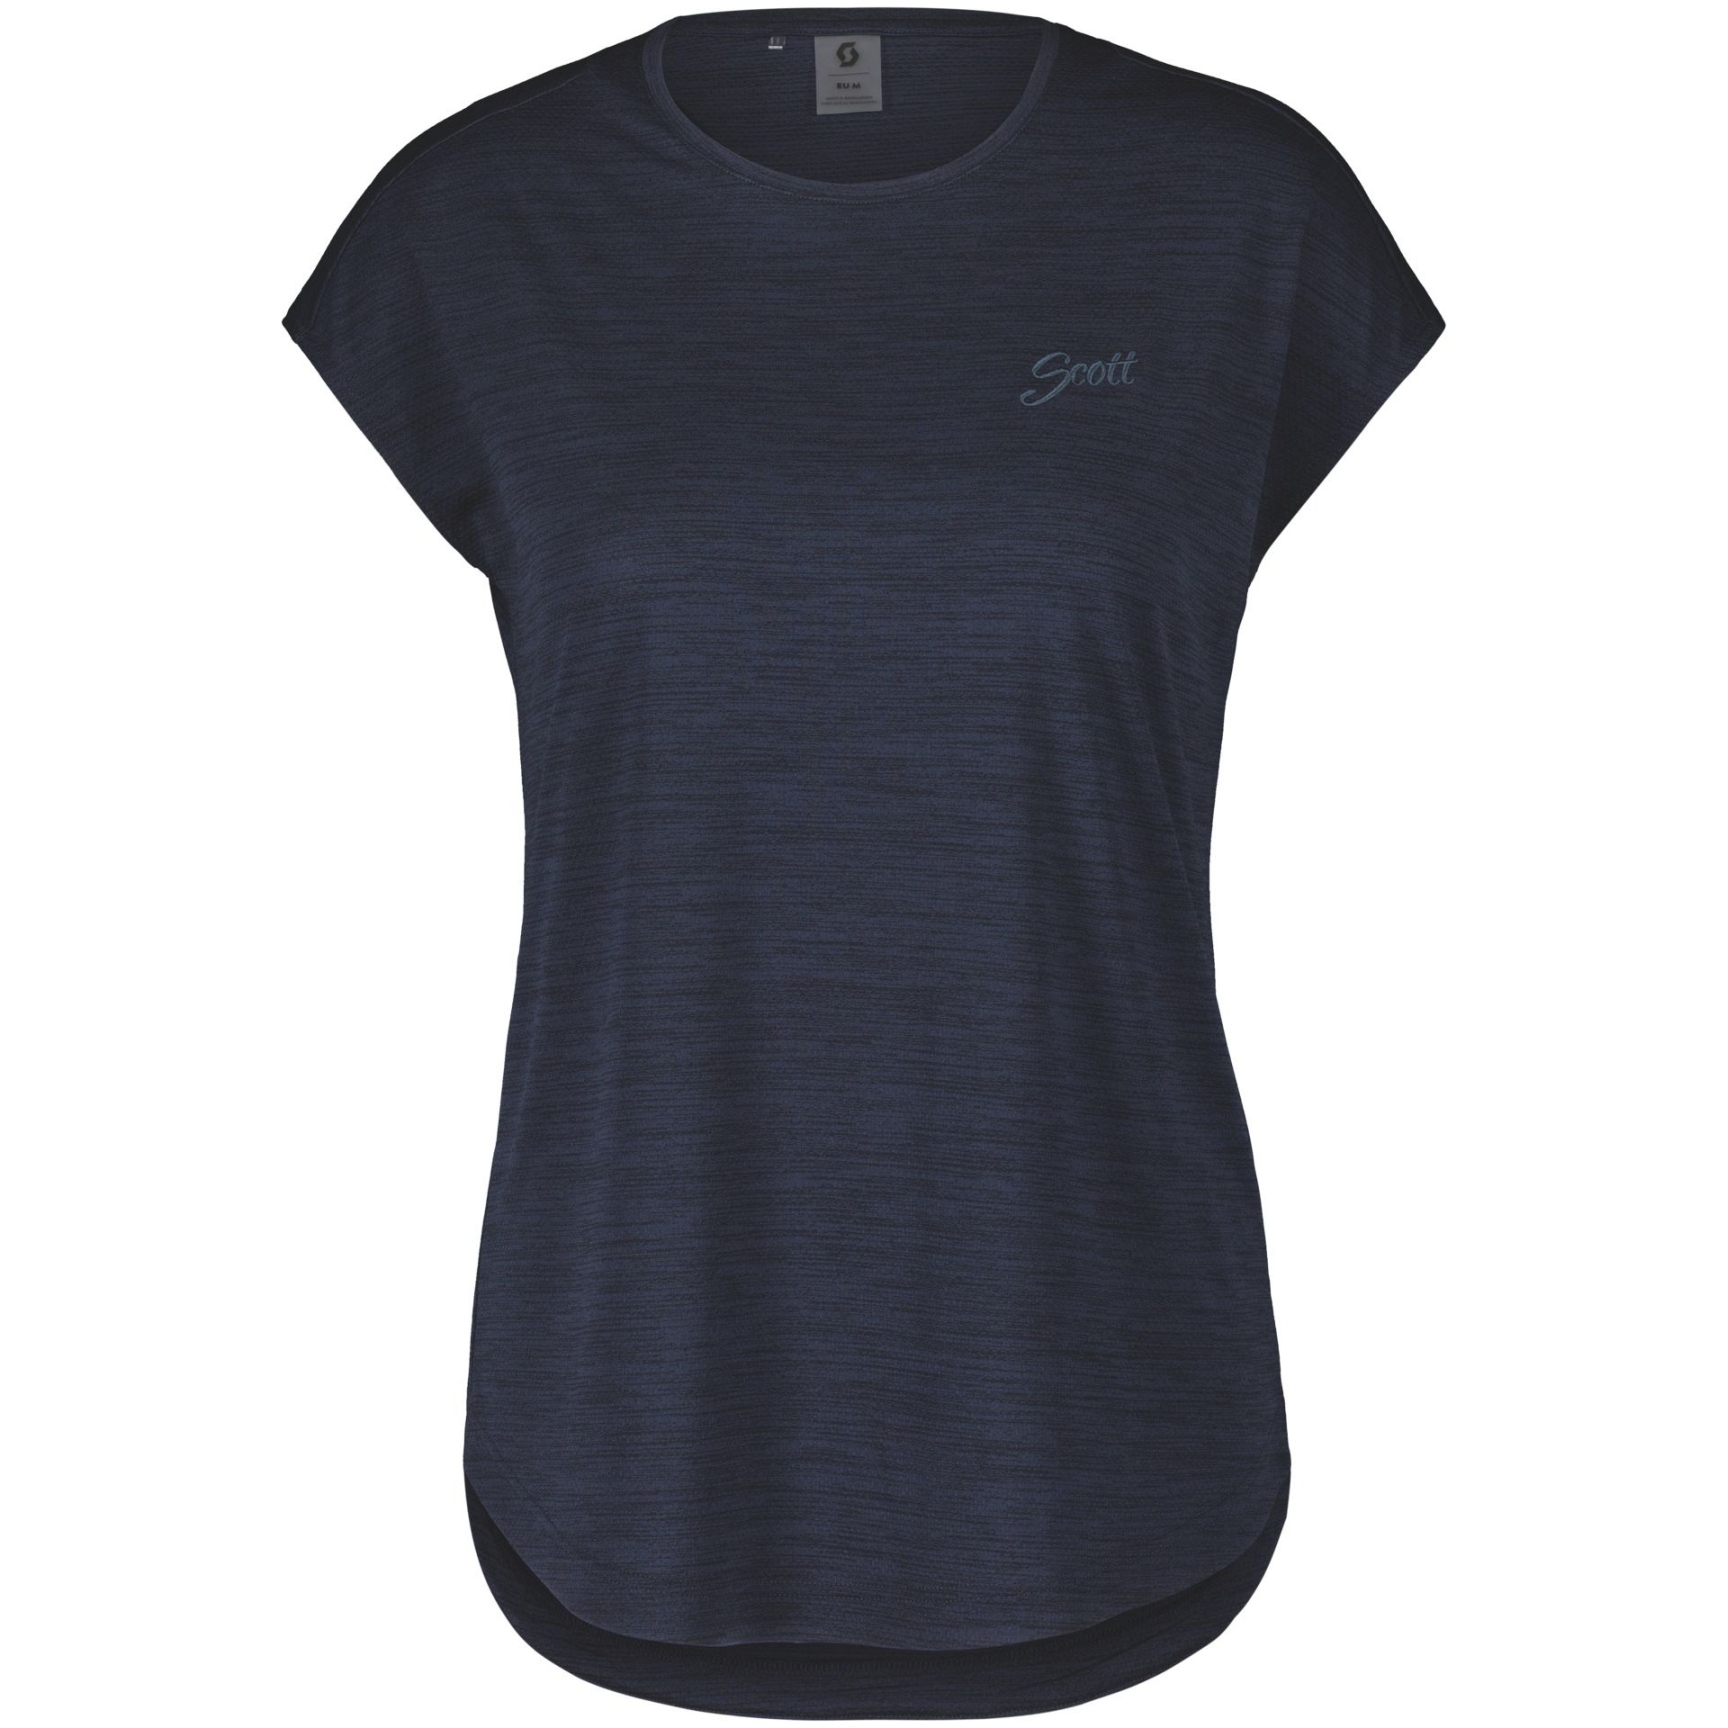 Produktbild von SCOTT Defined Kurzarmshirt Damen - dark blue